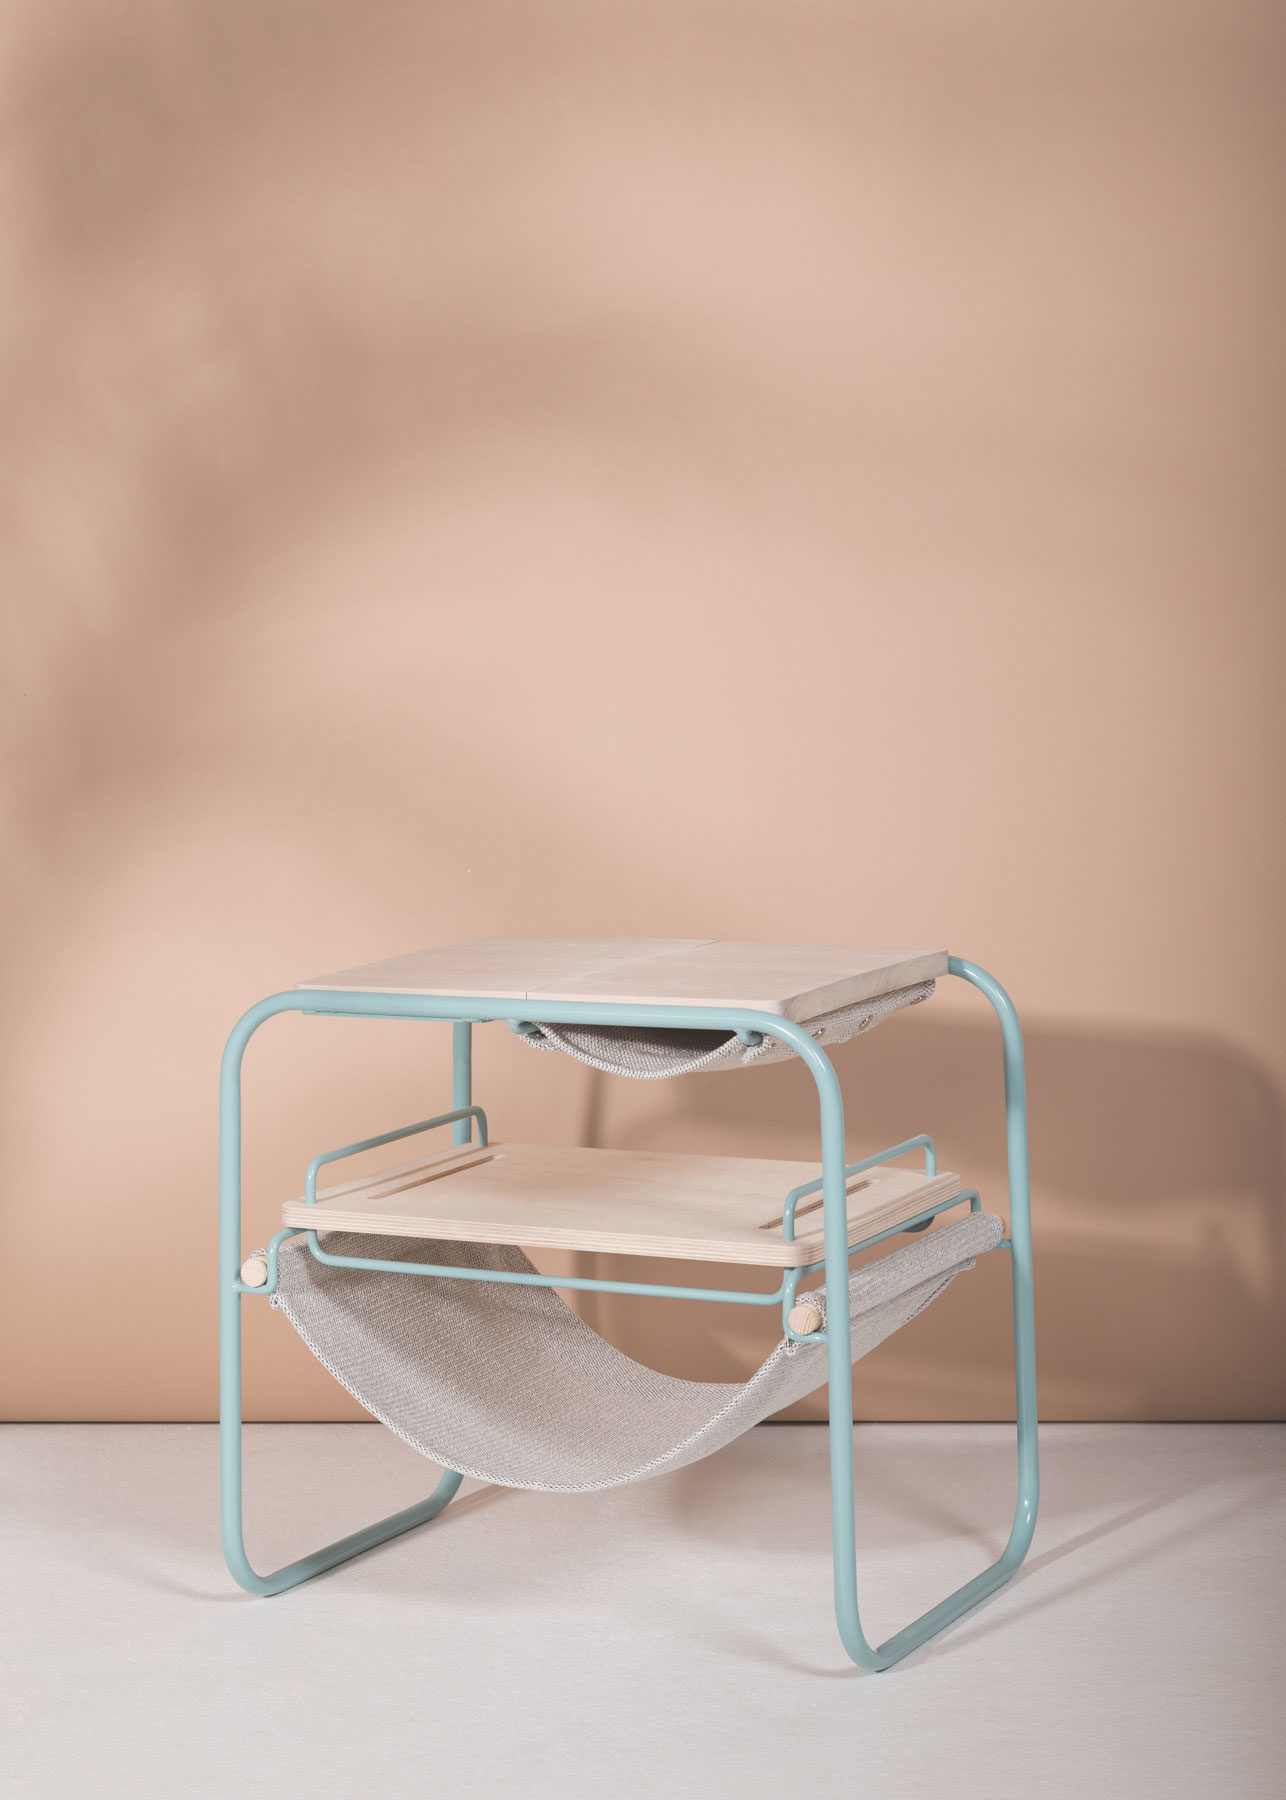 kvan-side-table-01